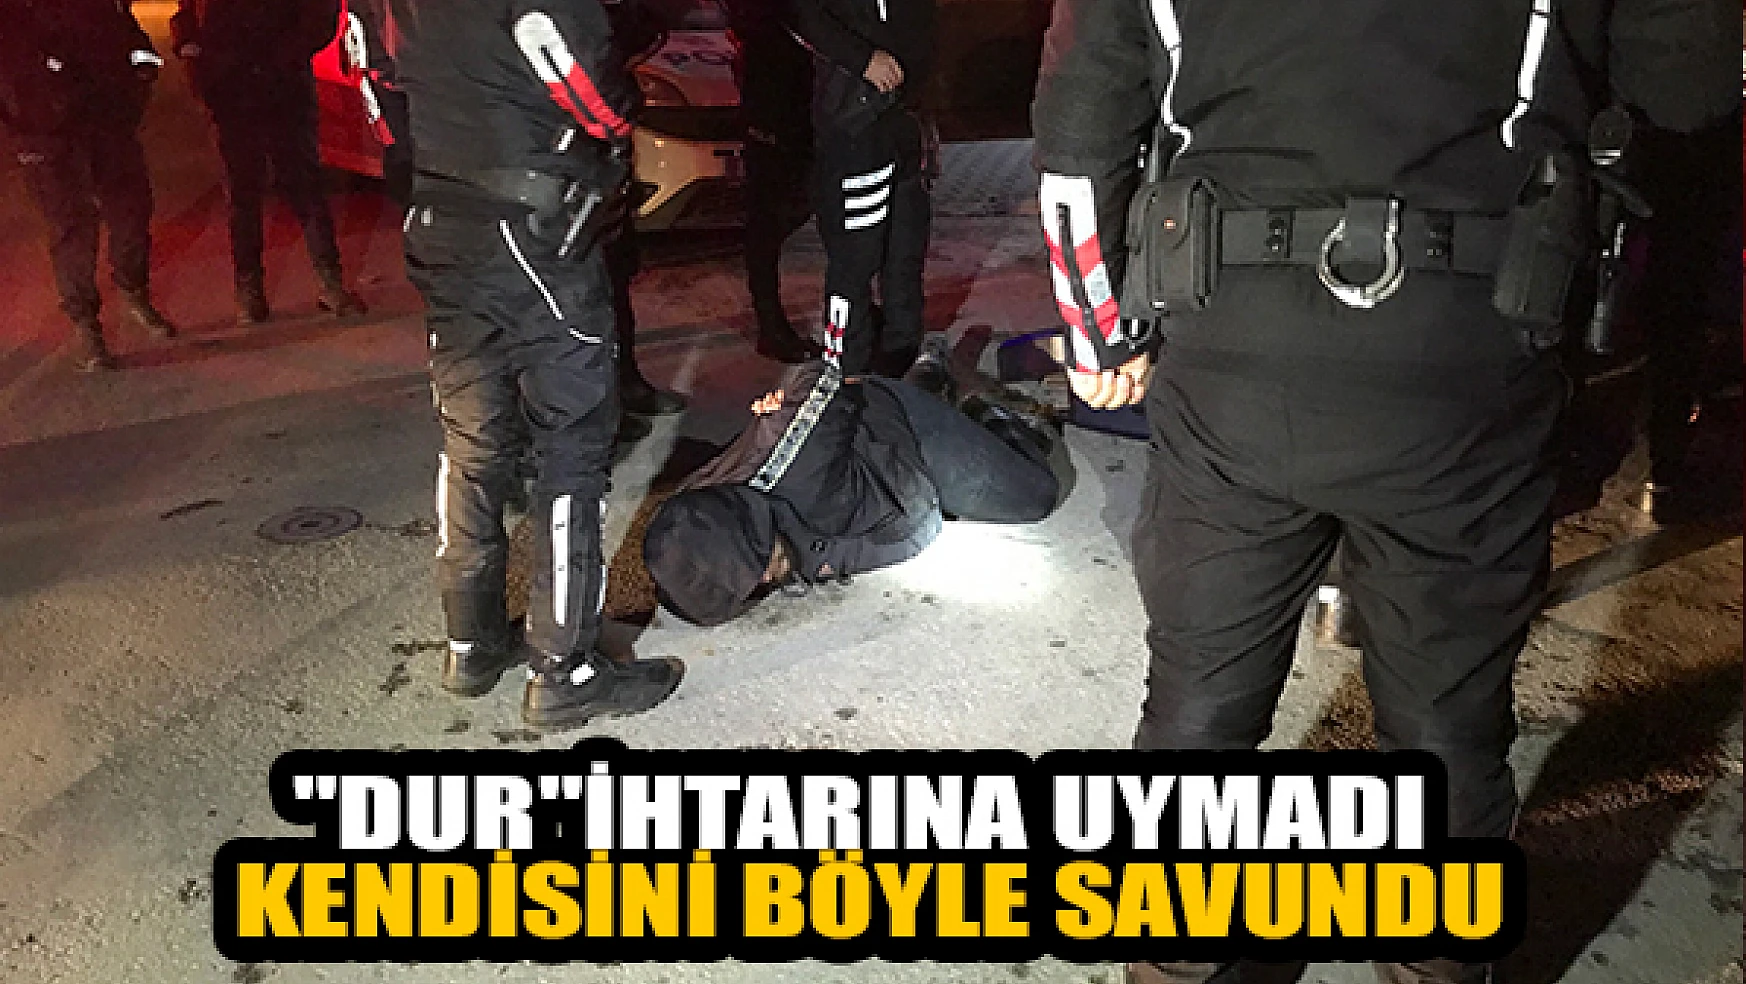 Konya'da 'Dur' ihtarına uymadı, yakalanınca kendisini böyle savundu